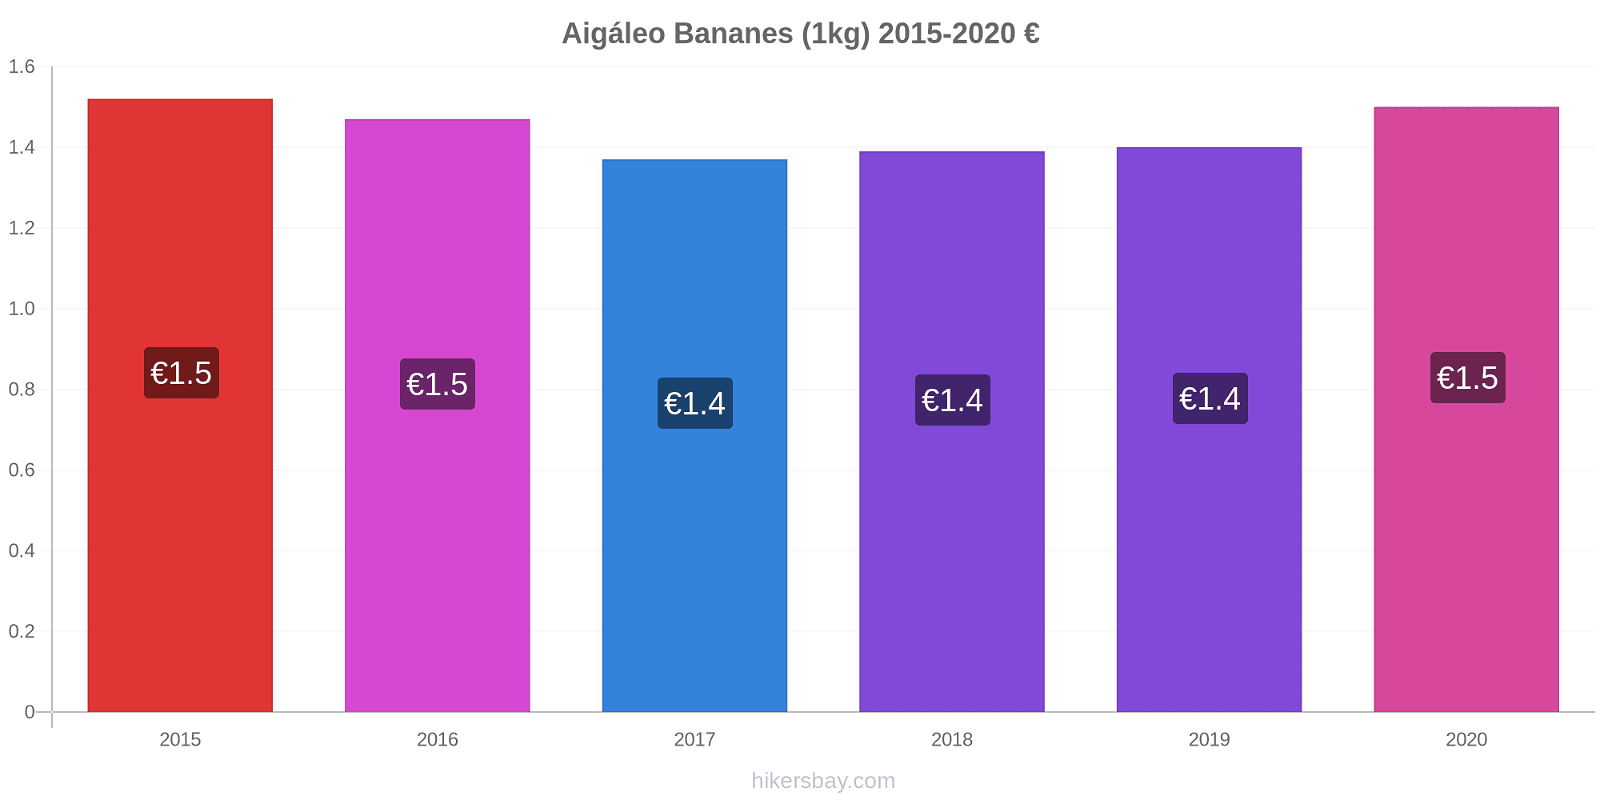 Aigáleo changements de prix Bananes (1kg) hikersbay.com